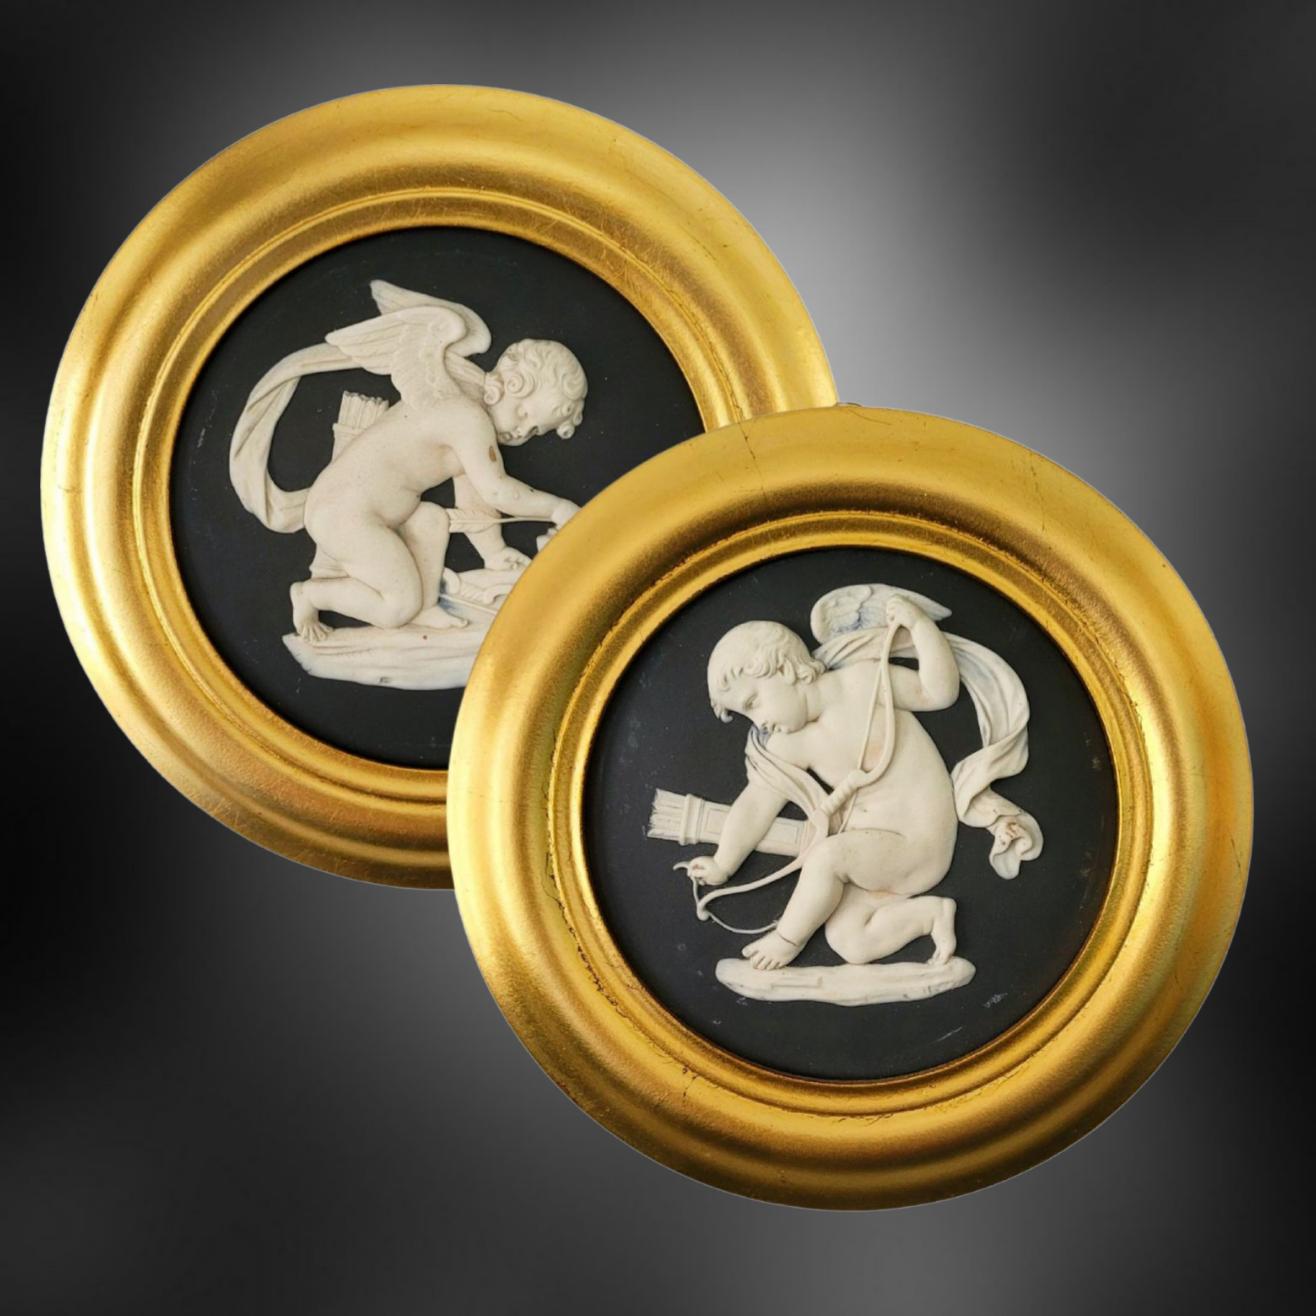 Ein außergewöhnlich feines Paar Rondelle aus schwarzem Jaspis, verziert mit zwei Abbildungen von Amor: Das erste zeigt Amor, der seine Pfeile spitzt, das zweite, wie er seinen Bogen spannt.

Amor ist eine beliebte Figur aus der antiken römischen